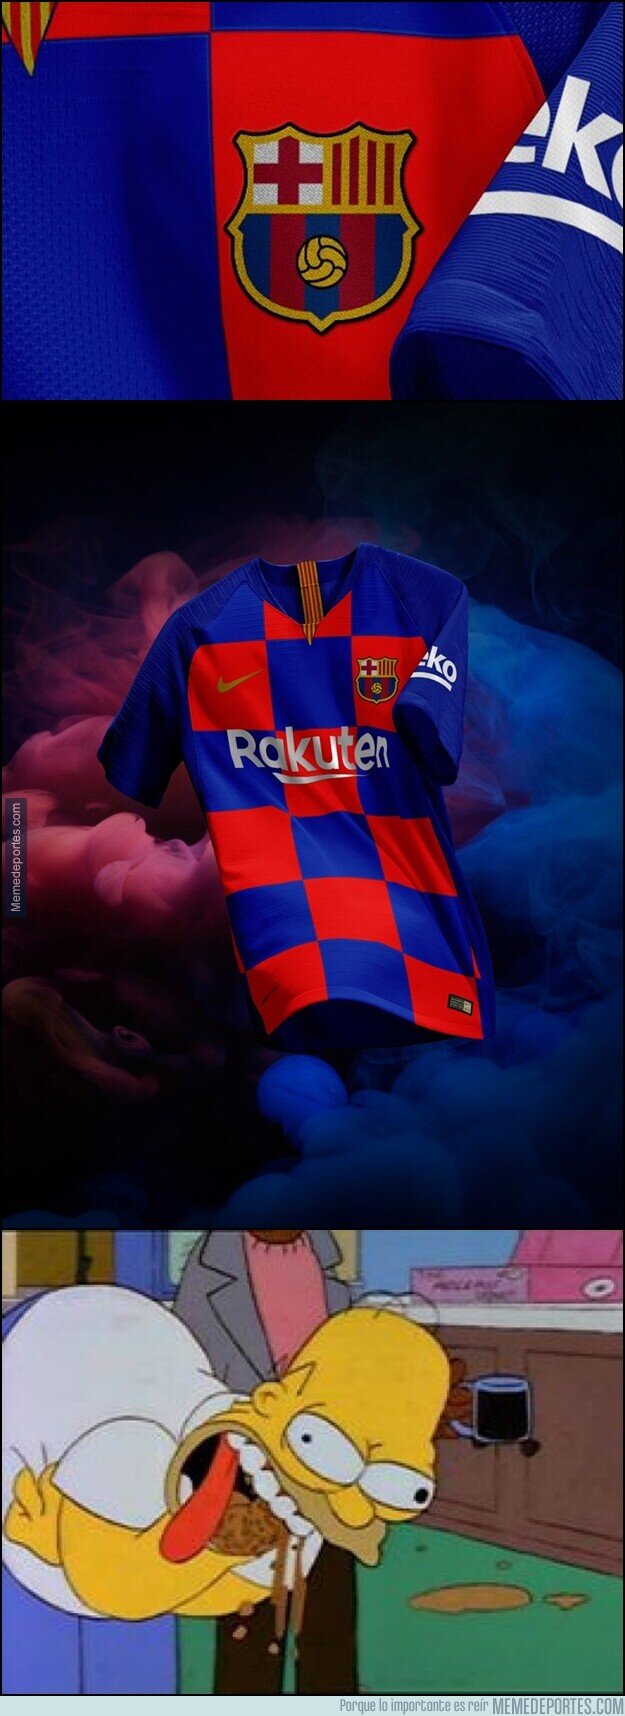 1105360 - Hace 2 años el Barça trató de vendernos una aberración sin nombre